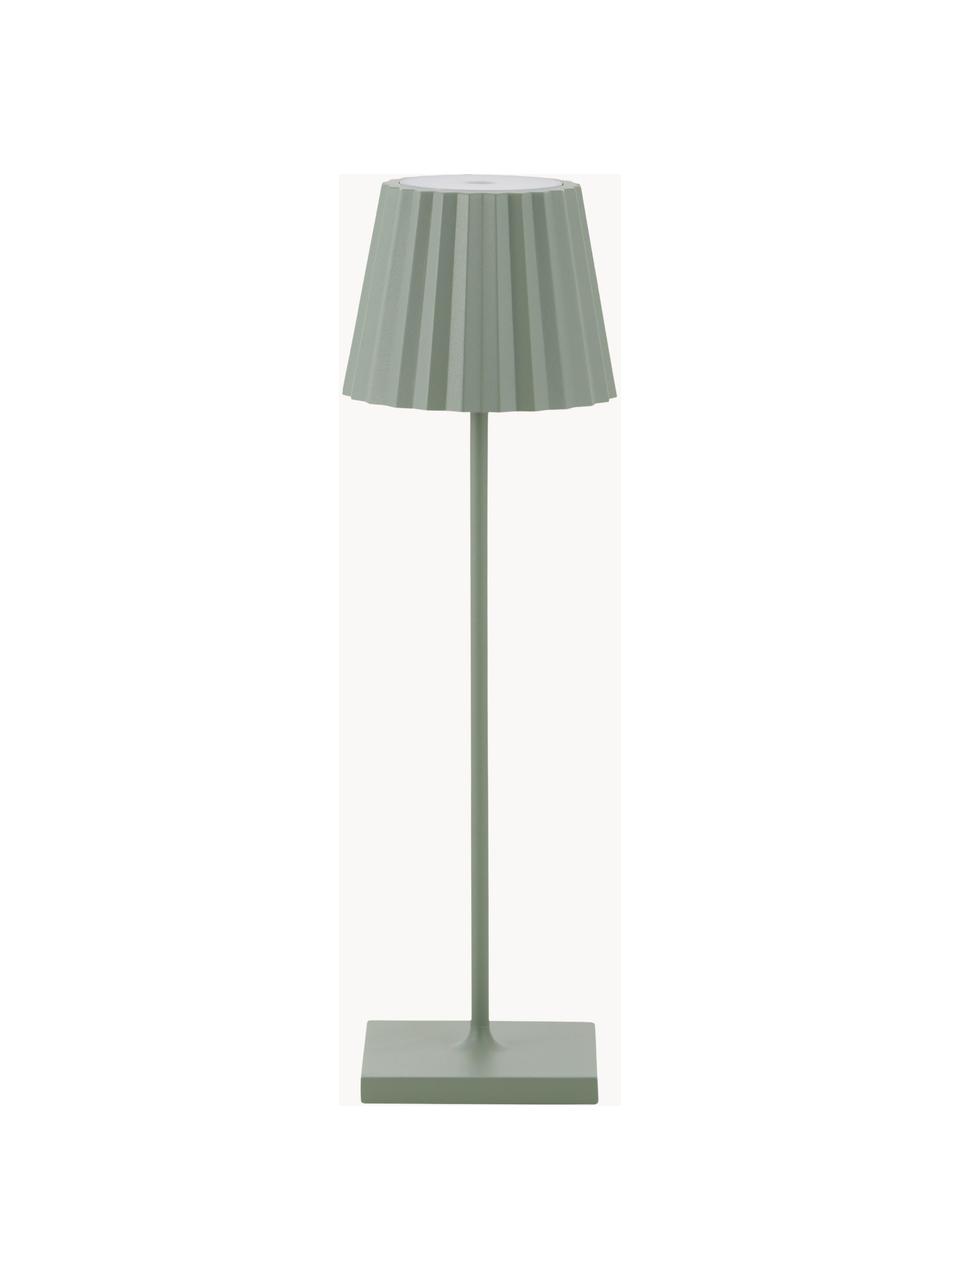 Mobile dimmbare LED-Außentischlampe Trellia, Lampenschirm: Aluminium, lackiert, Lampenfuß: Aluminium, lackiert, Salbeigrün, Ø 12 x H 38 cm